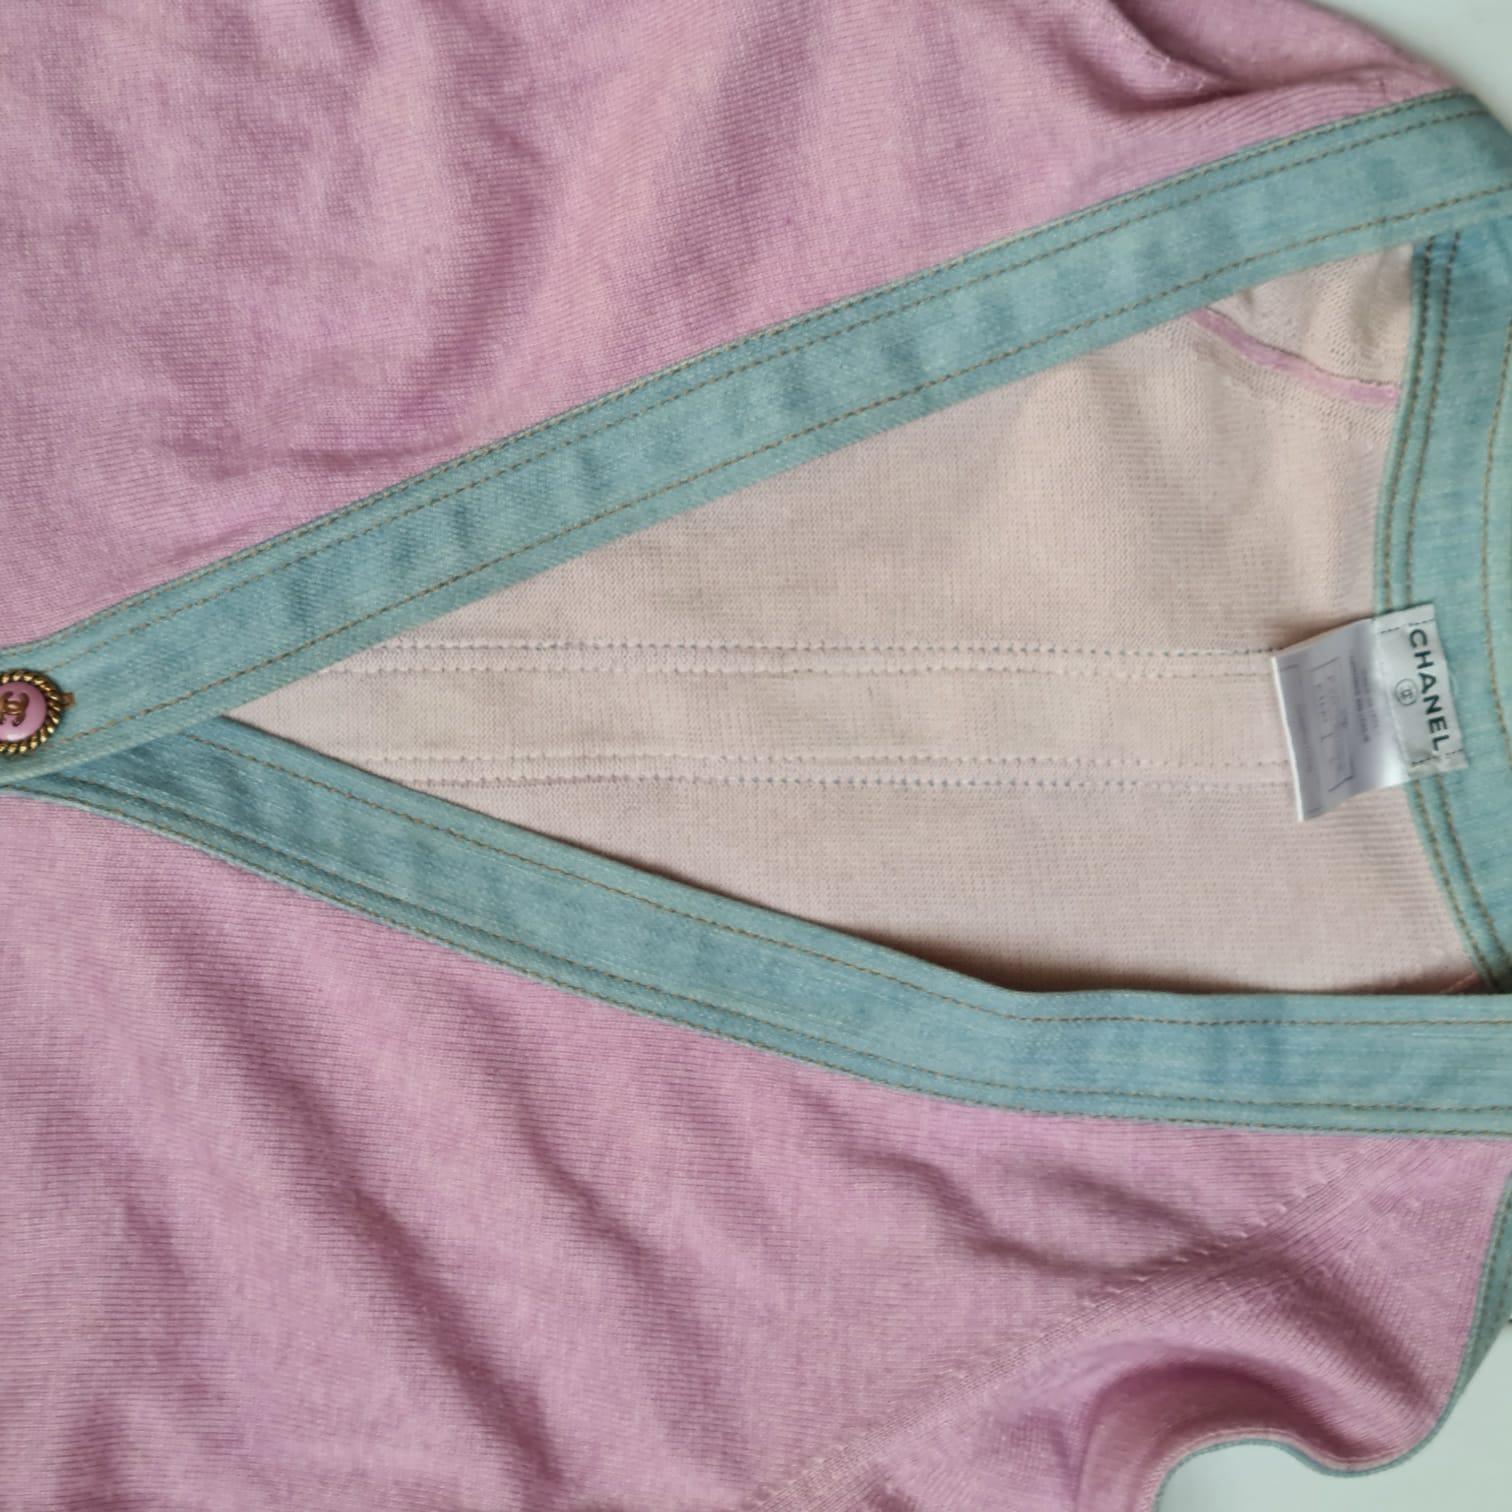 Veste cardigan en denim et cachemire mélangés de la collection 2007. Magnifique cachemire rose avec garnitures en denim bleu. Globalement en bon état, avec de légères marques de lavage et de flou sur la surface du tissu. L'étiquette de lavage